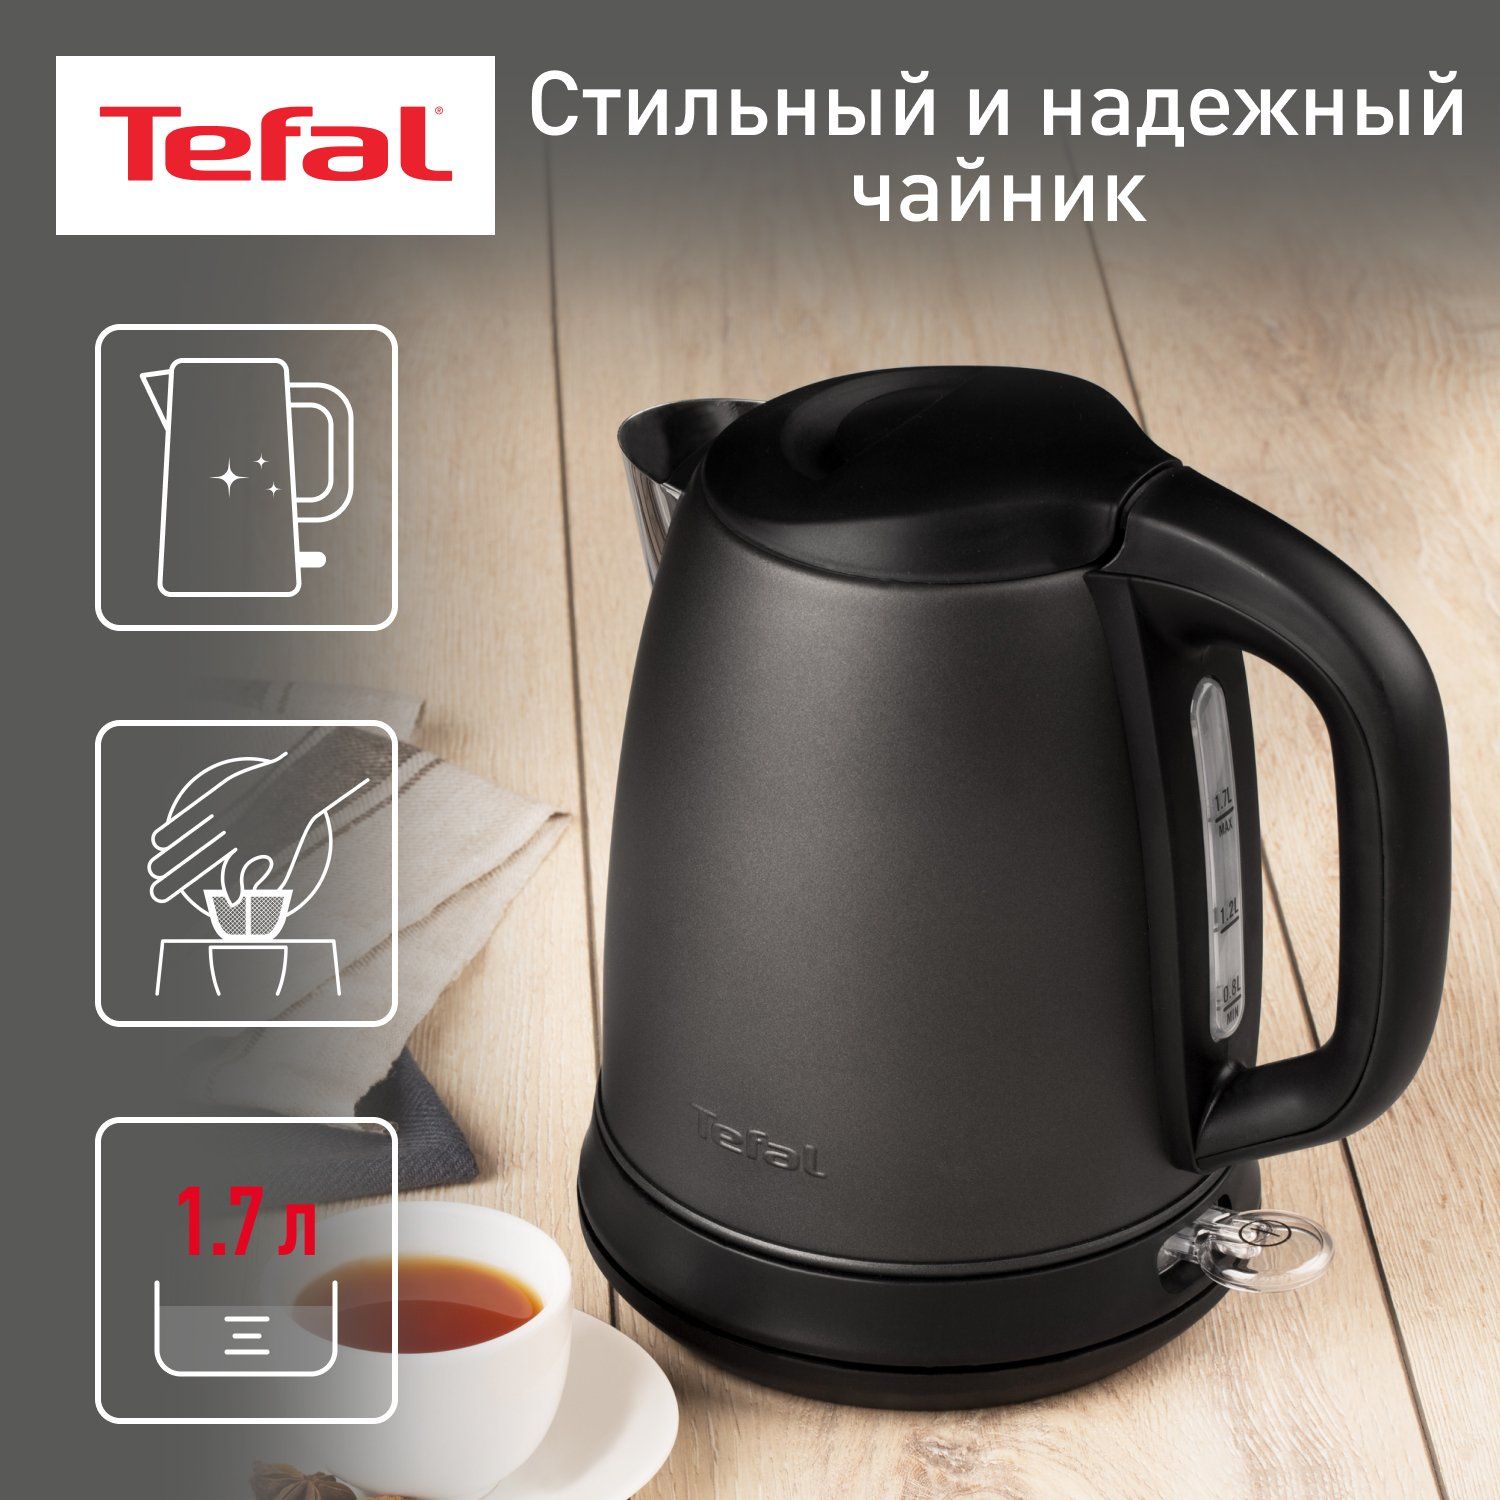 Чайник электрический Tefal Confidence KI270930, 1.7 л, графит/черный фильтр tefal zr004201